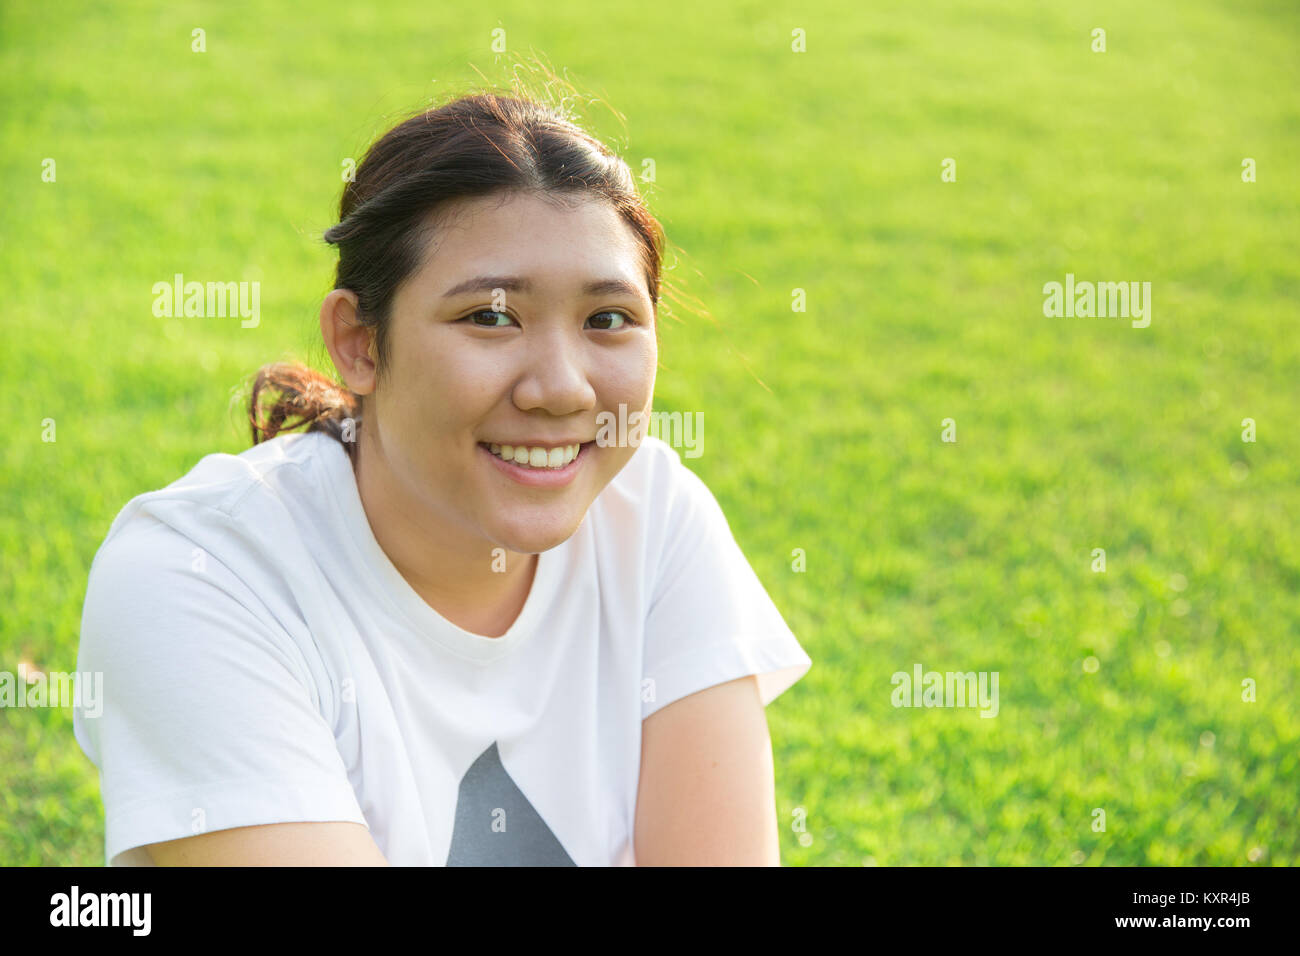 Cute asian teen sourire avec la bonne santé des dents sur fond d'herbe verte Banque D'Images